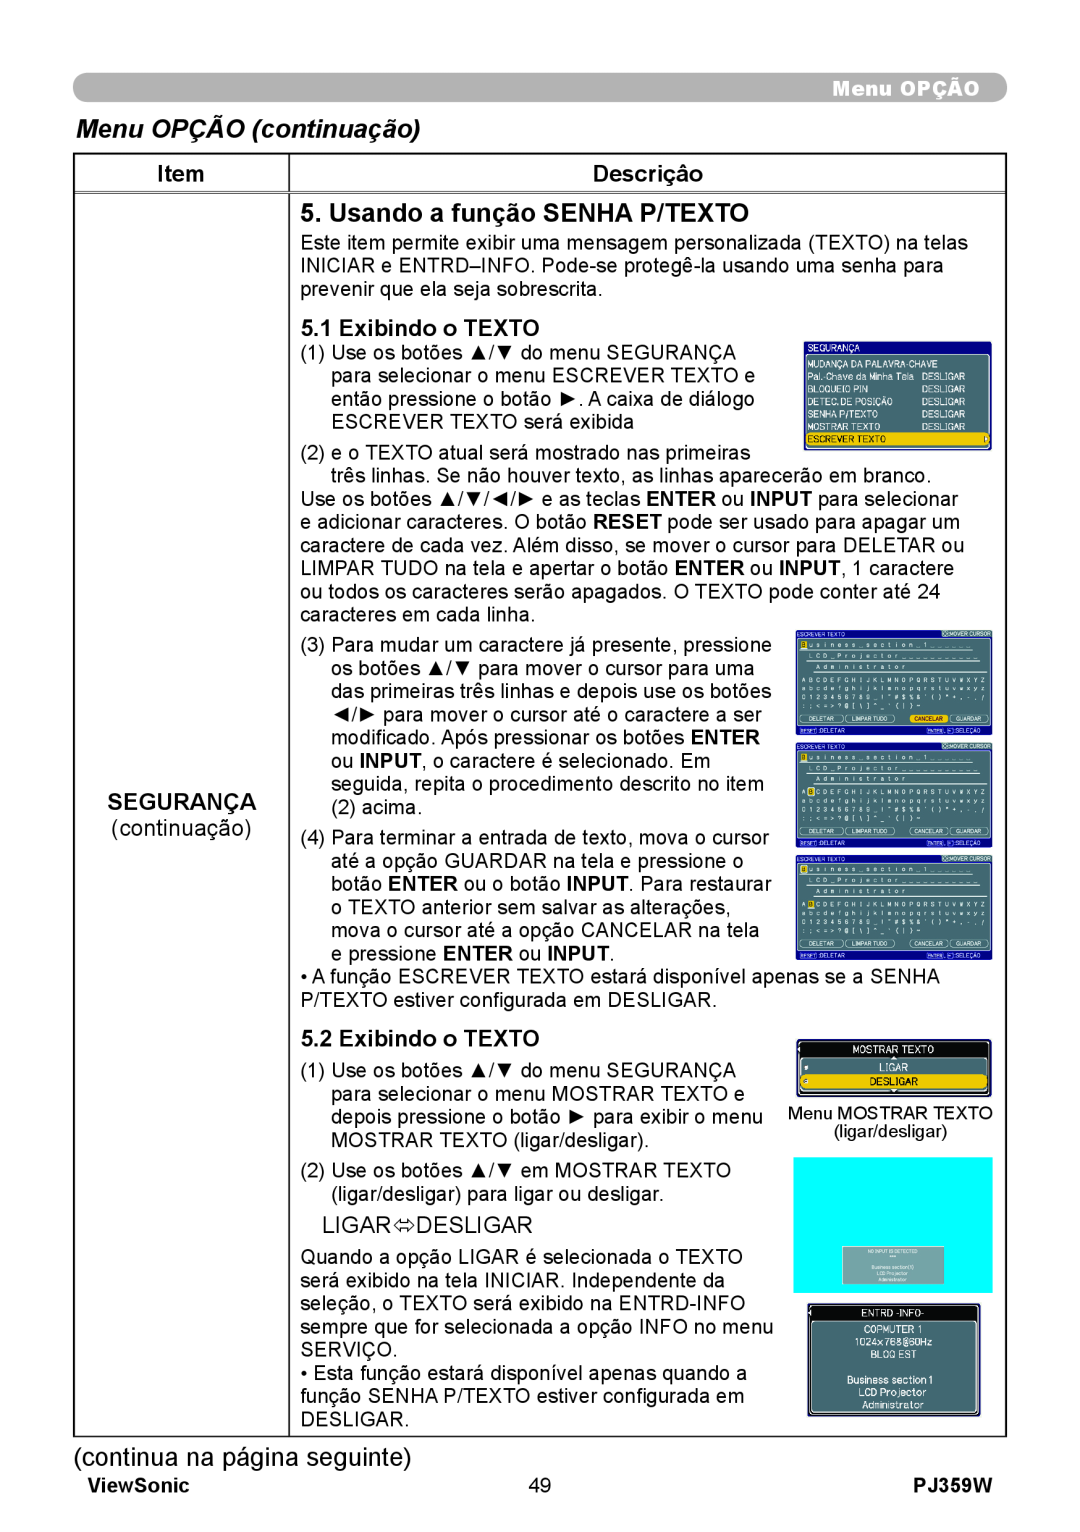 ViewSonic PJ359 Usando a função SENHA P/TEXTO, Menu OPÇÃO continuação, Descriçâo, Segurança, Exibindo o TEXTO, ViewSonic 